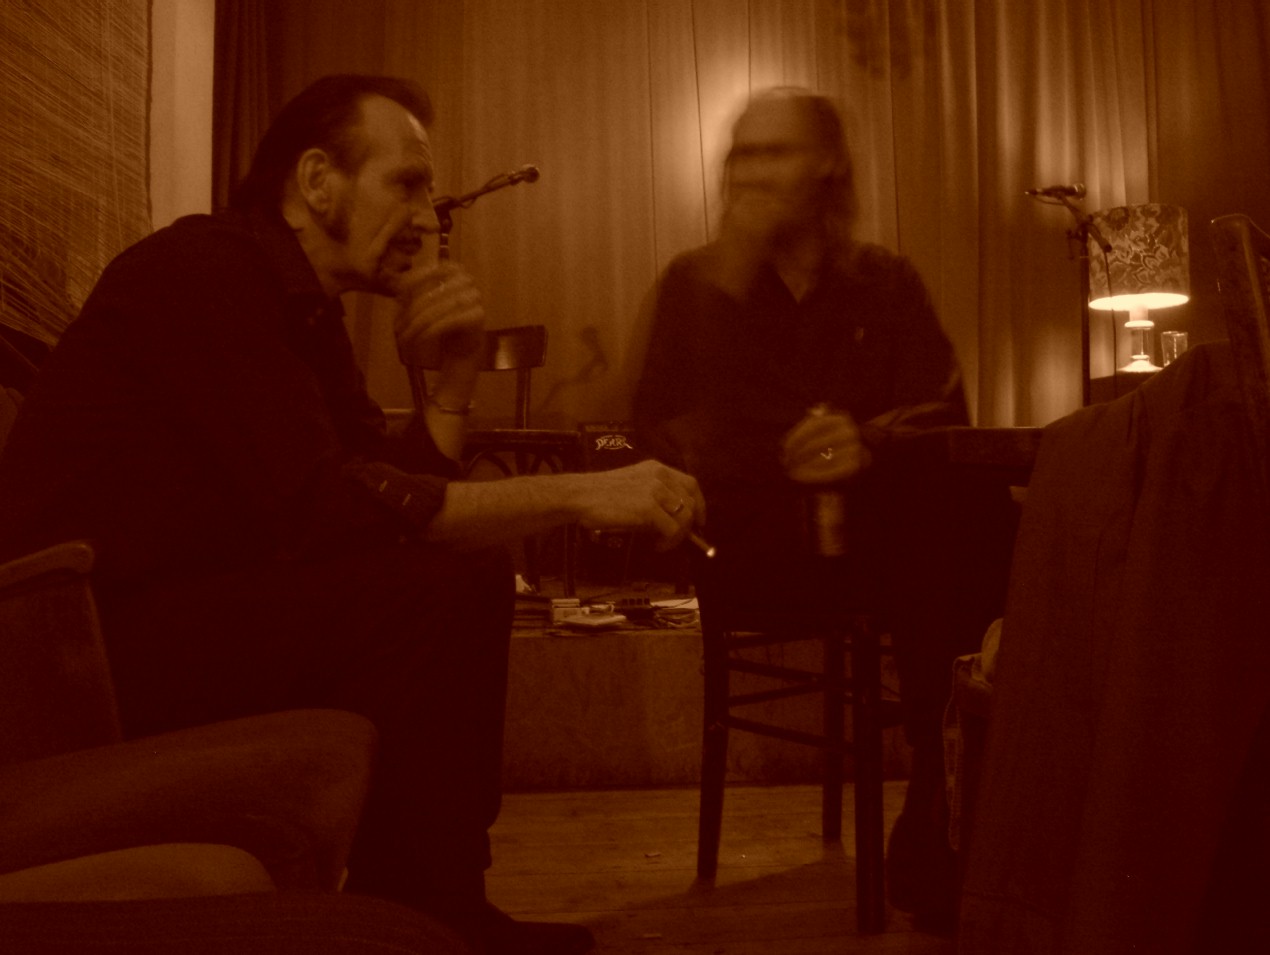 Adams & Shoenfelt @ Trödler, Berlin, 26.10.2007, photo by Kati Münker